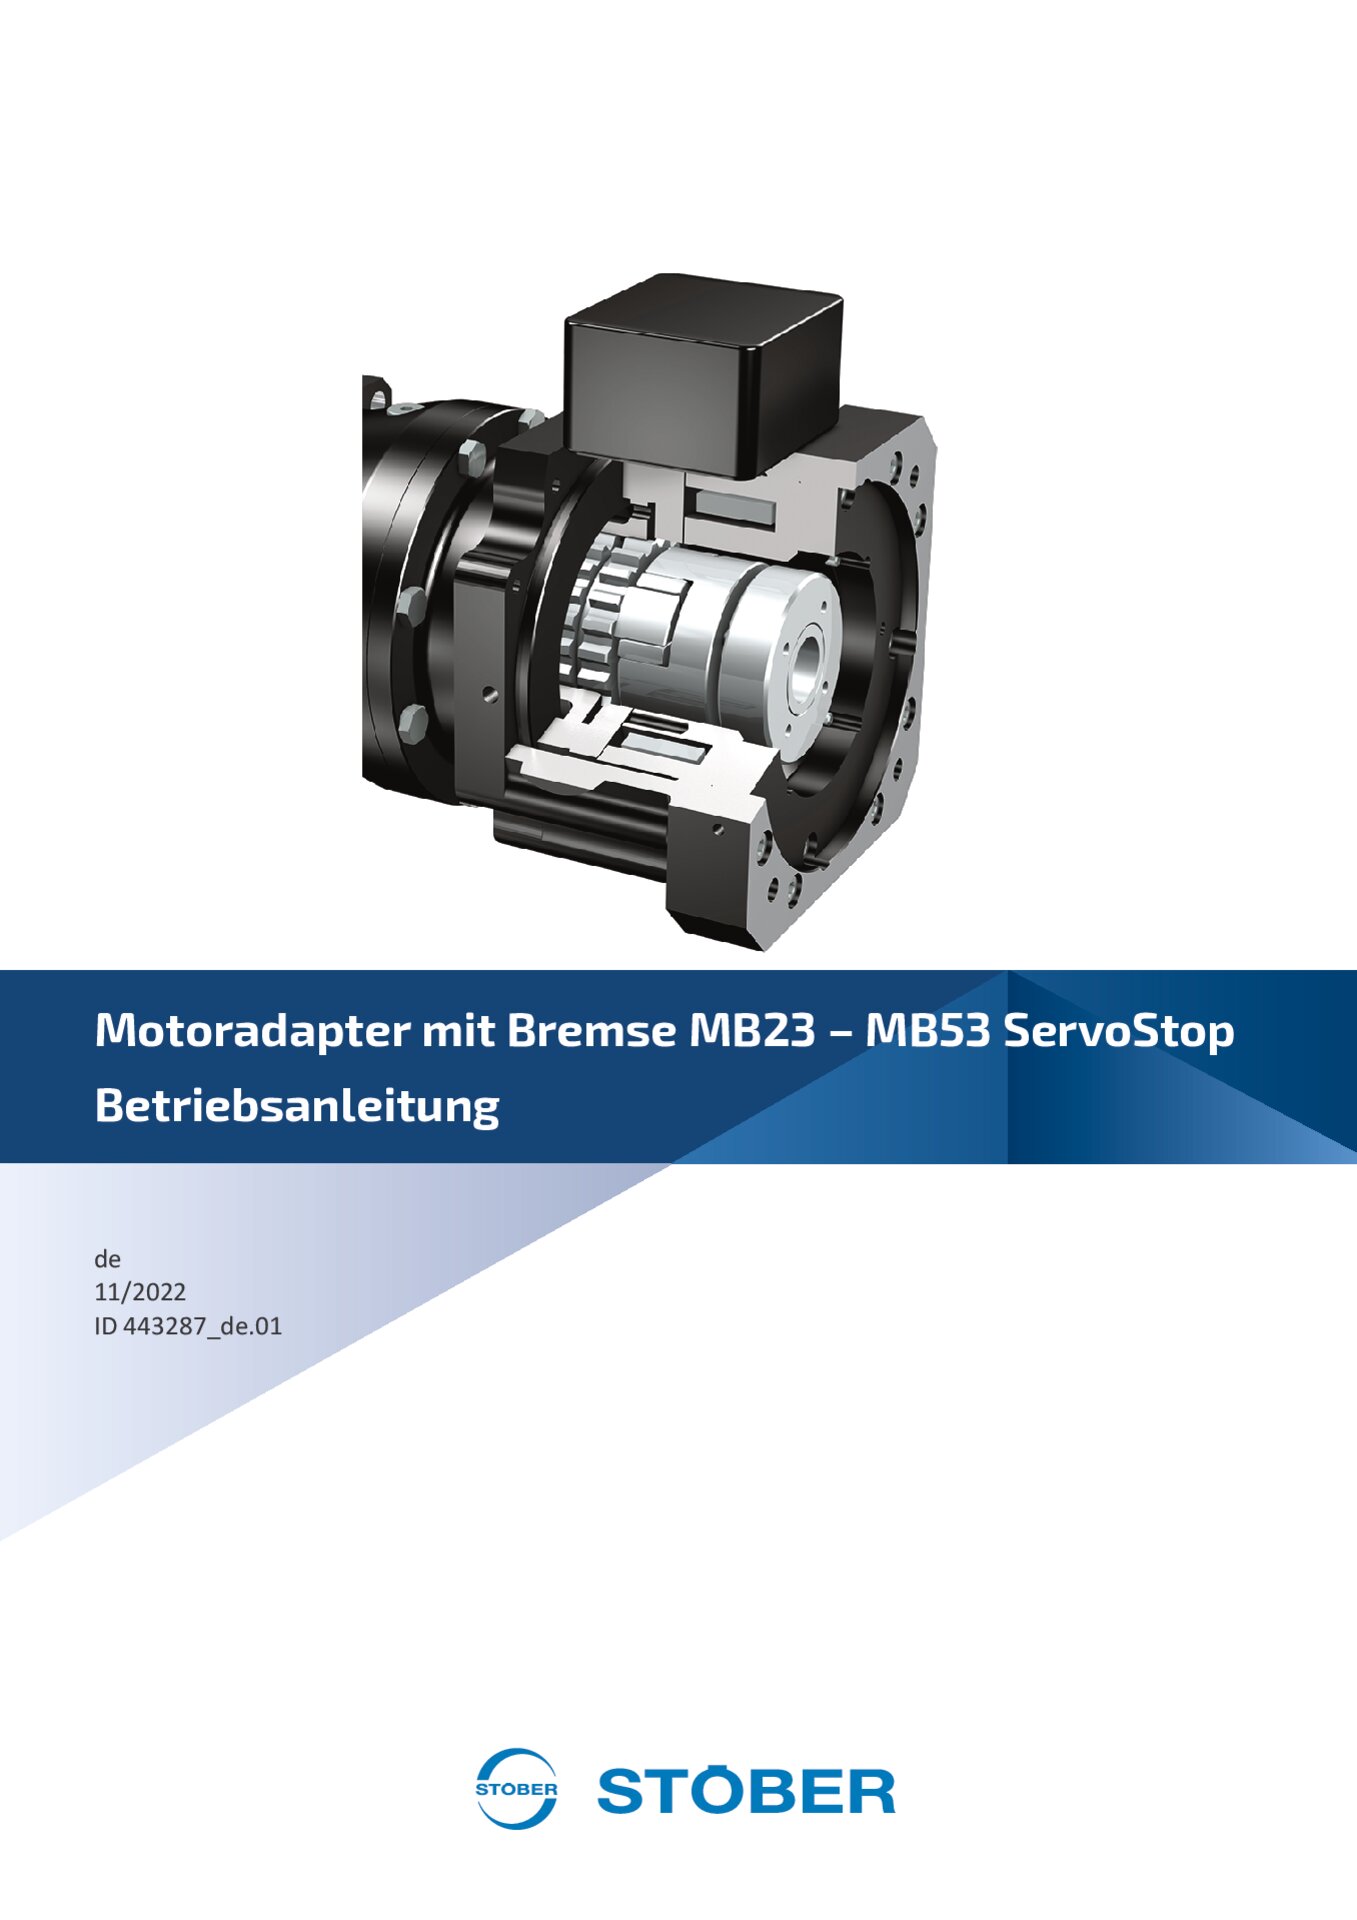 Betriebsanleitung Motoradapter MB23 - MB53 ServoStop